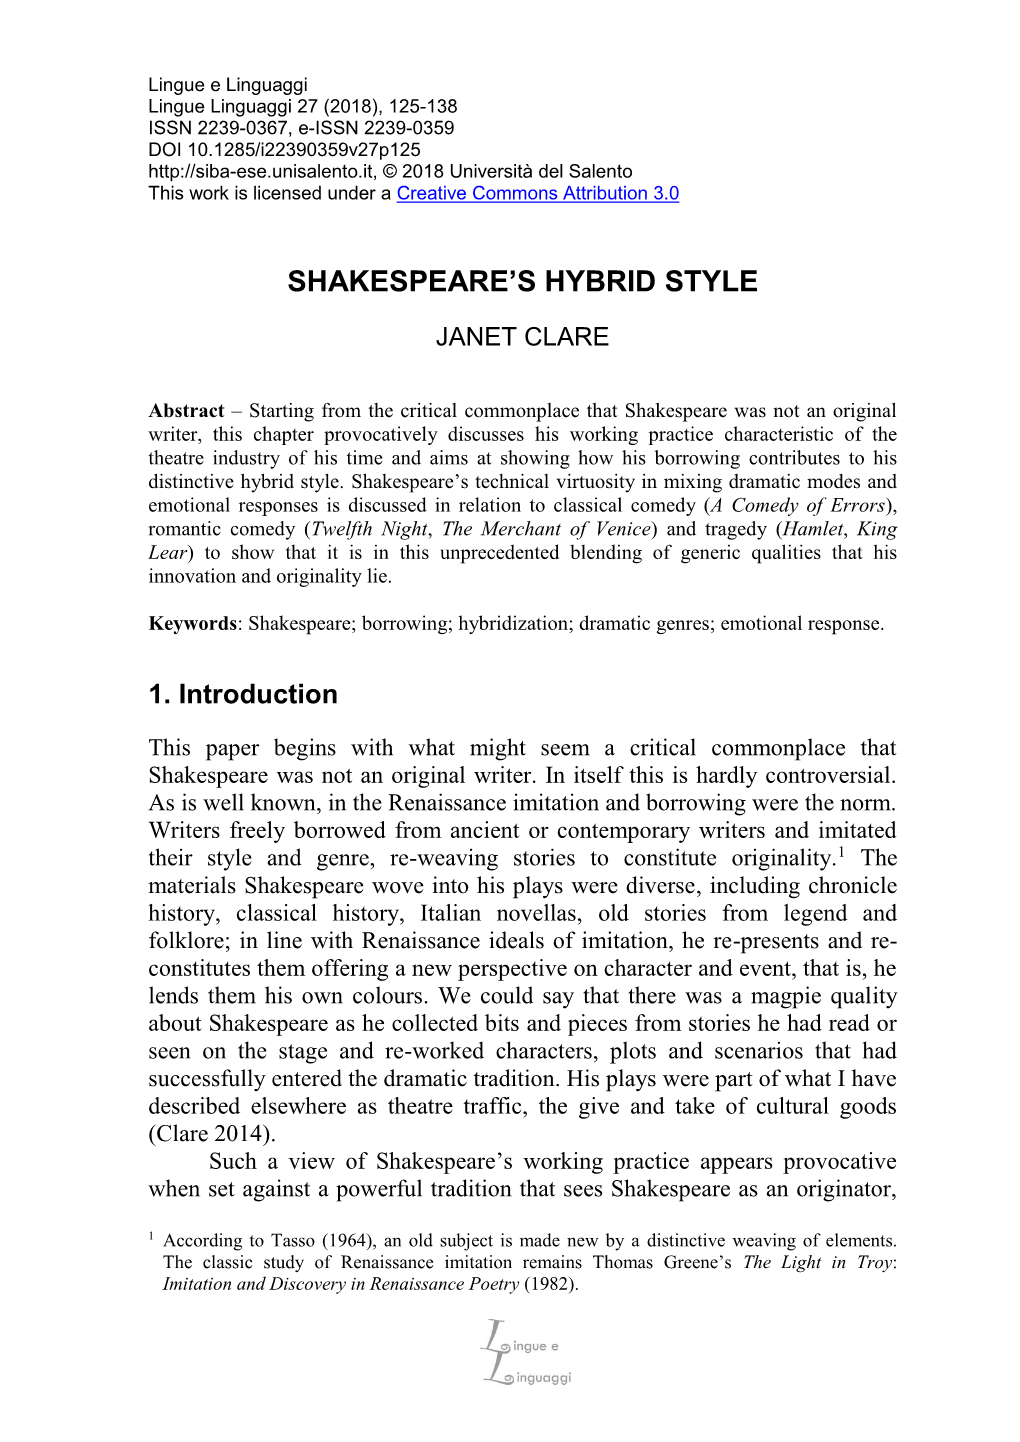 Shakespeare's Hybrid Style